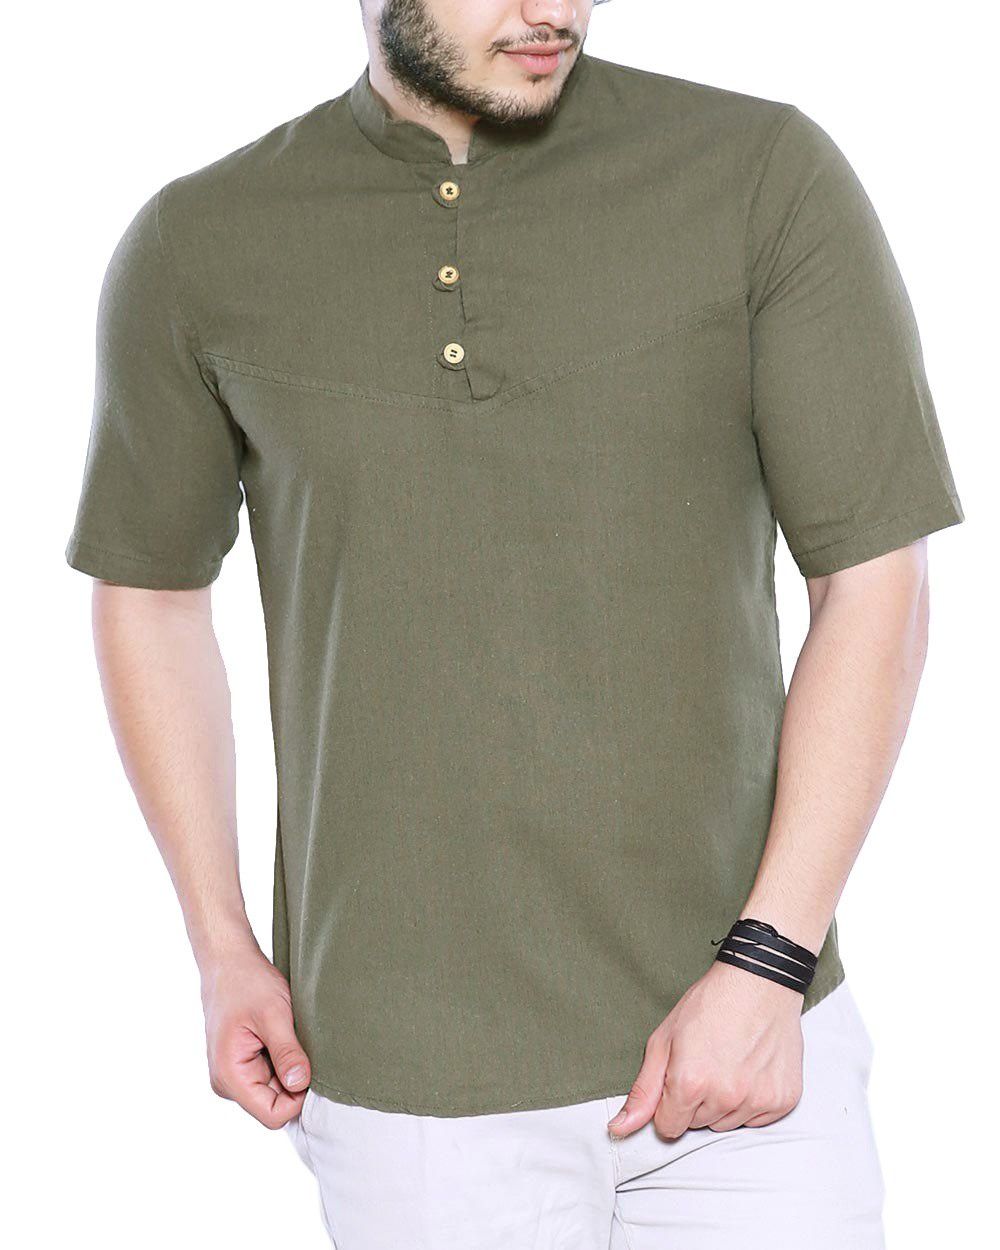 پیراهن آستین کوتاه مردانه مدل آستیاک - تن درست - سبز تيره - 6